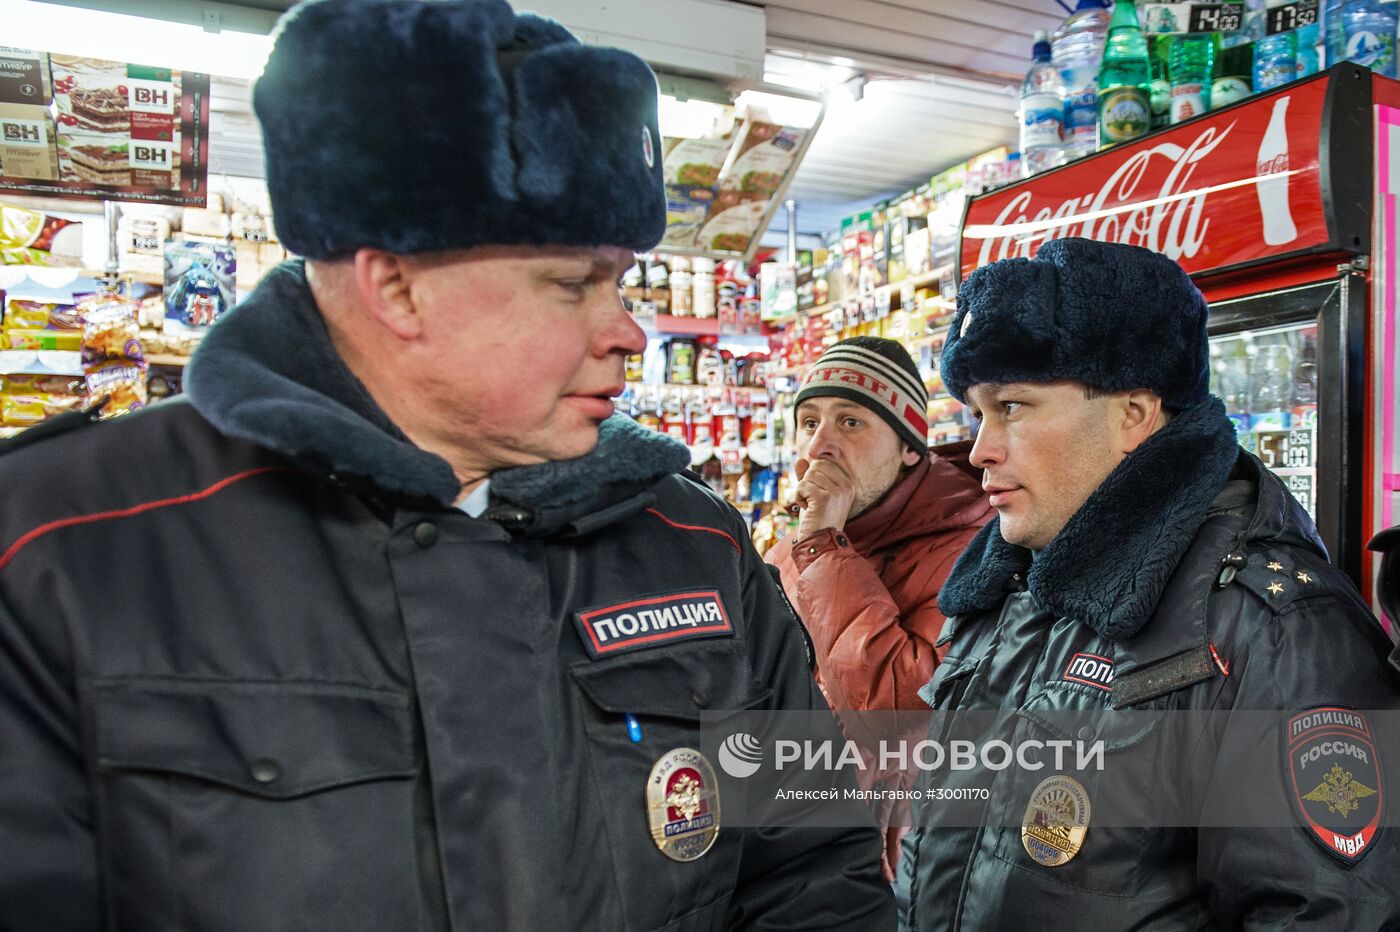 Рейд по местам реализации настойки "Боярышник" в Омске